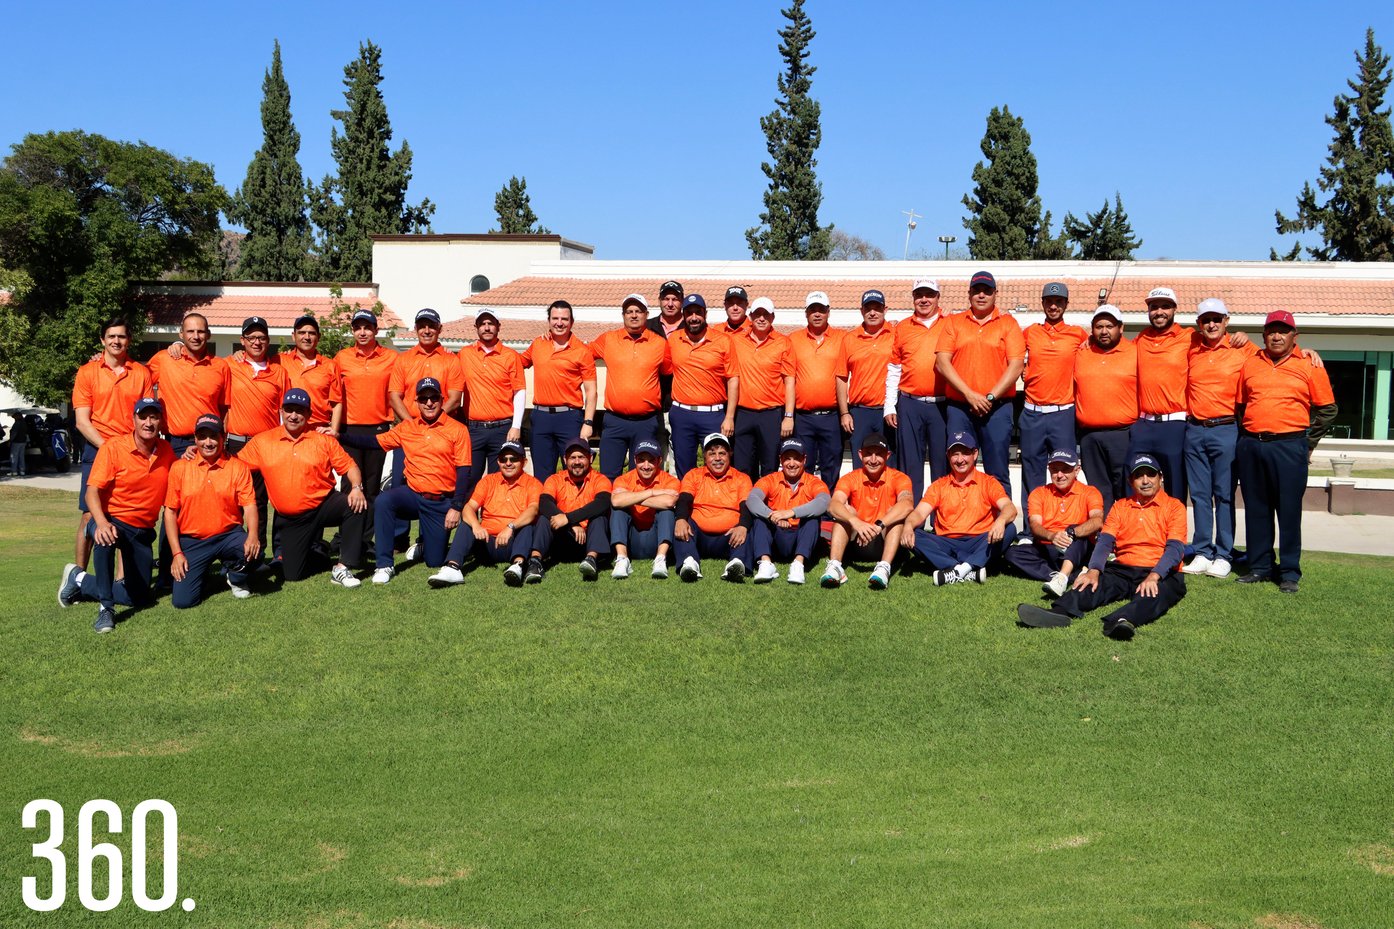 El equipo de golfistas del Club Campestre de Saltillo obtuvieron el triunfo en su casa por score de 66 contra 44 del Club de Gol “El Socorro”, de Monclova en la primera etapa del Dual Meet.